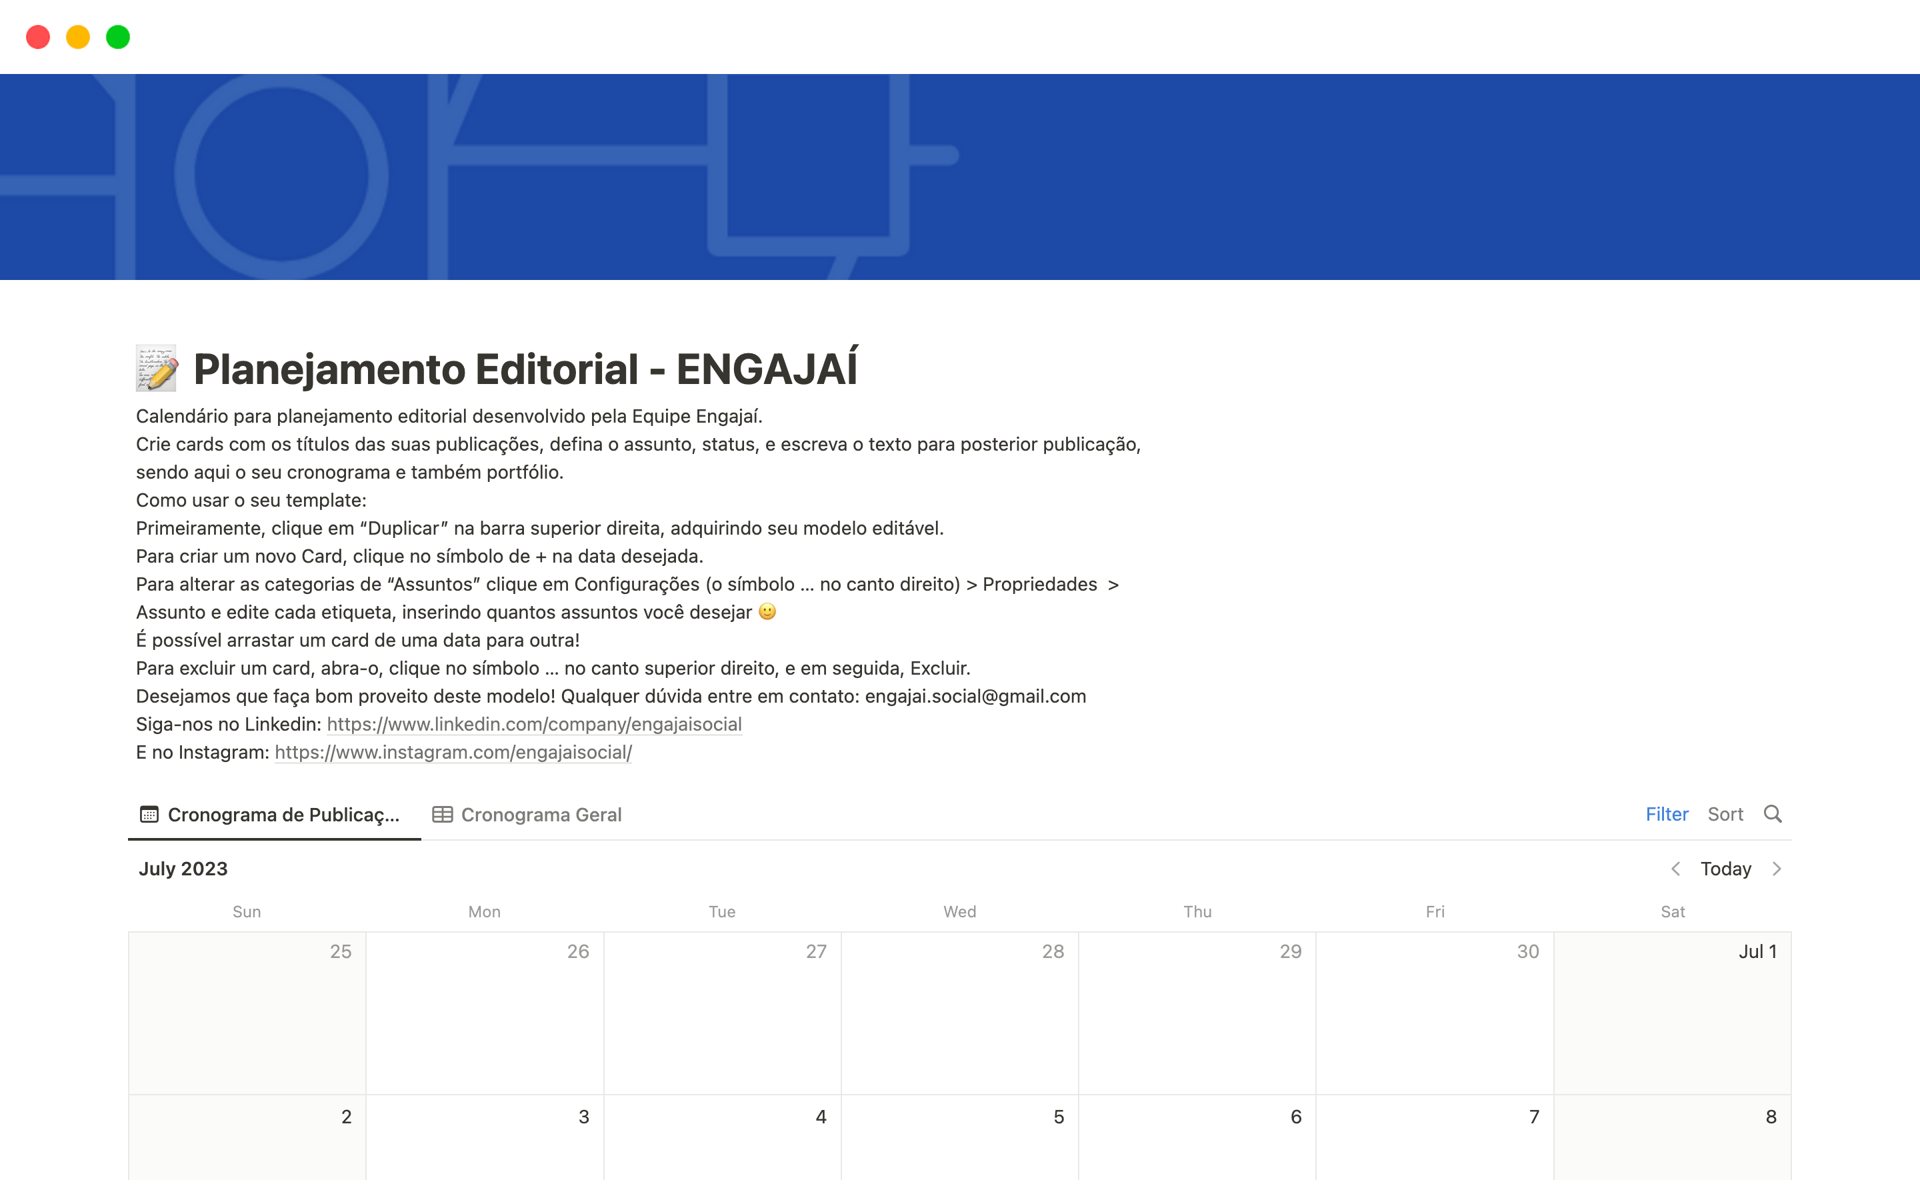 Calendário para planejamento editorial desenvolvido pela Equipe Engajaí.